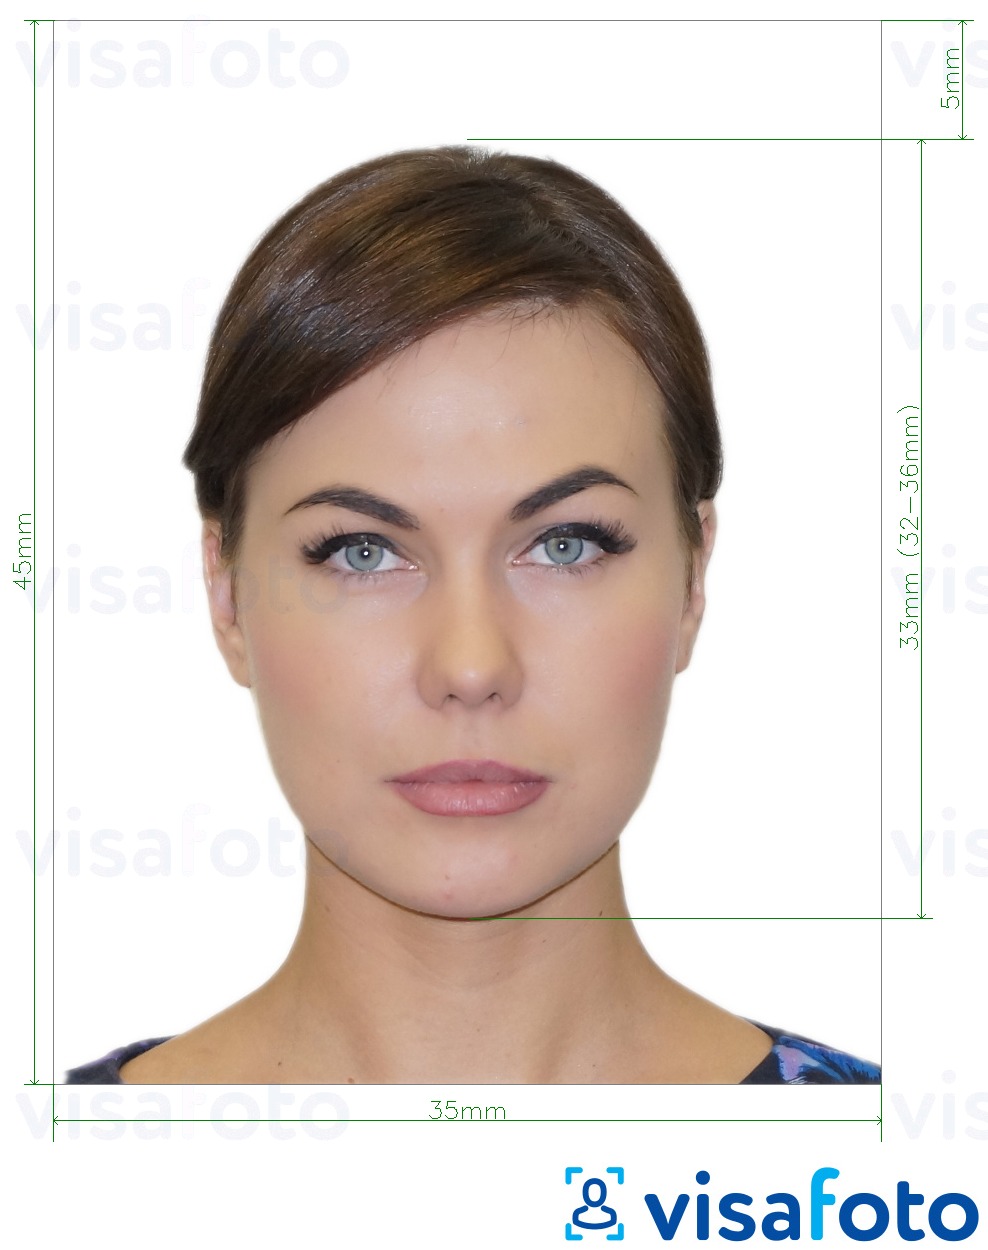 Primjer fotografije za Ruski navijački ID  piksela s točno određenom veličinom